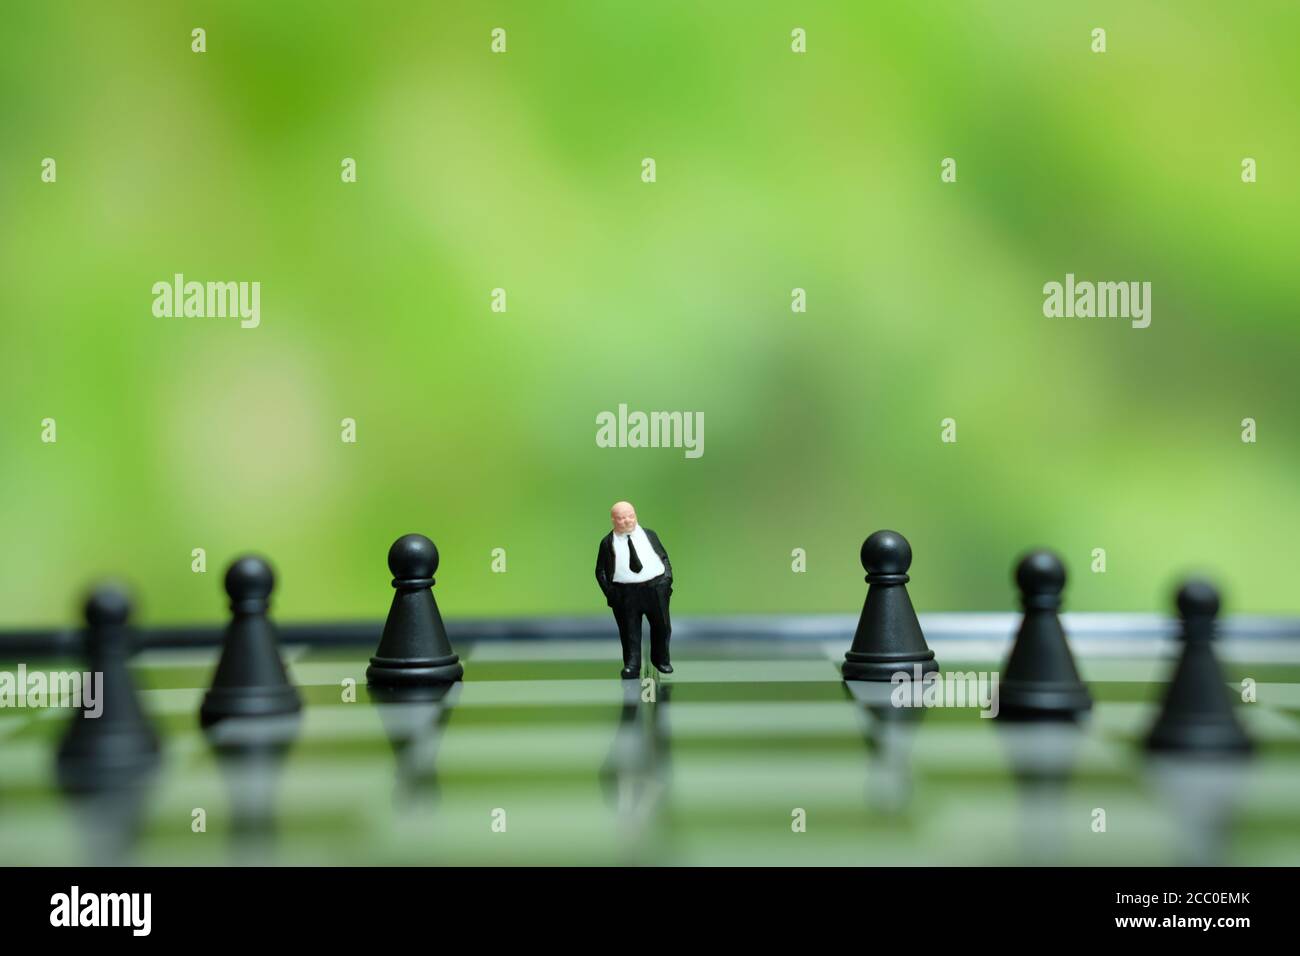 Foto concettuale strategia aziendale - miniatura di uomo d'affari in piedi la parte centrale del pezzo di scacchi su una scacchiera Foto Stock